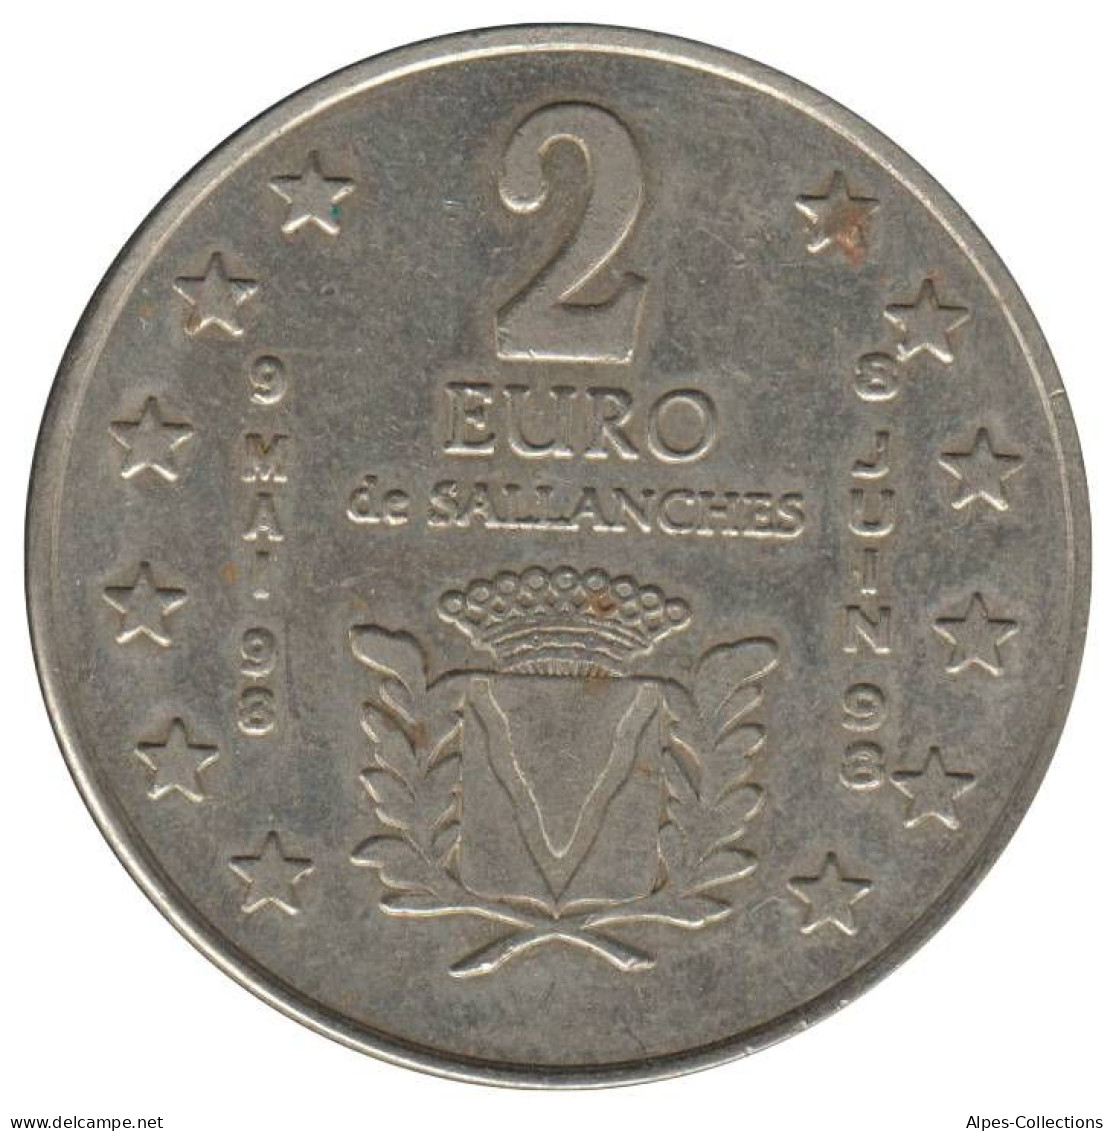 SALLANCHES - EU0020.1 - 2 EURO DES VILLES - Réf: NR - 1998 - Euro Van De Steden